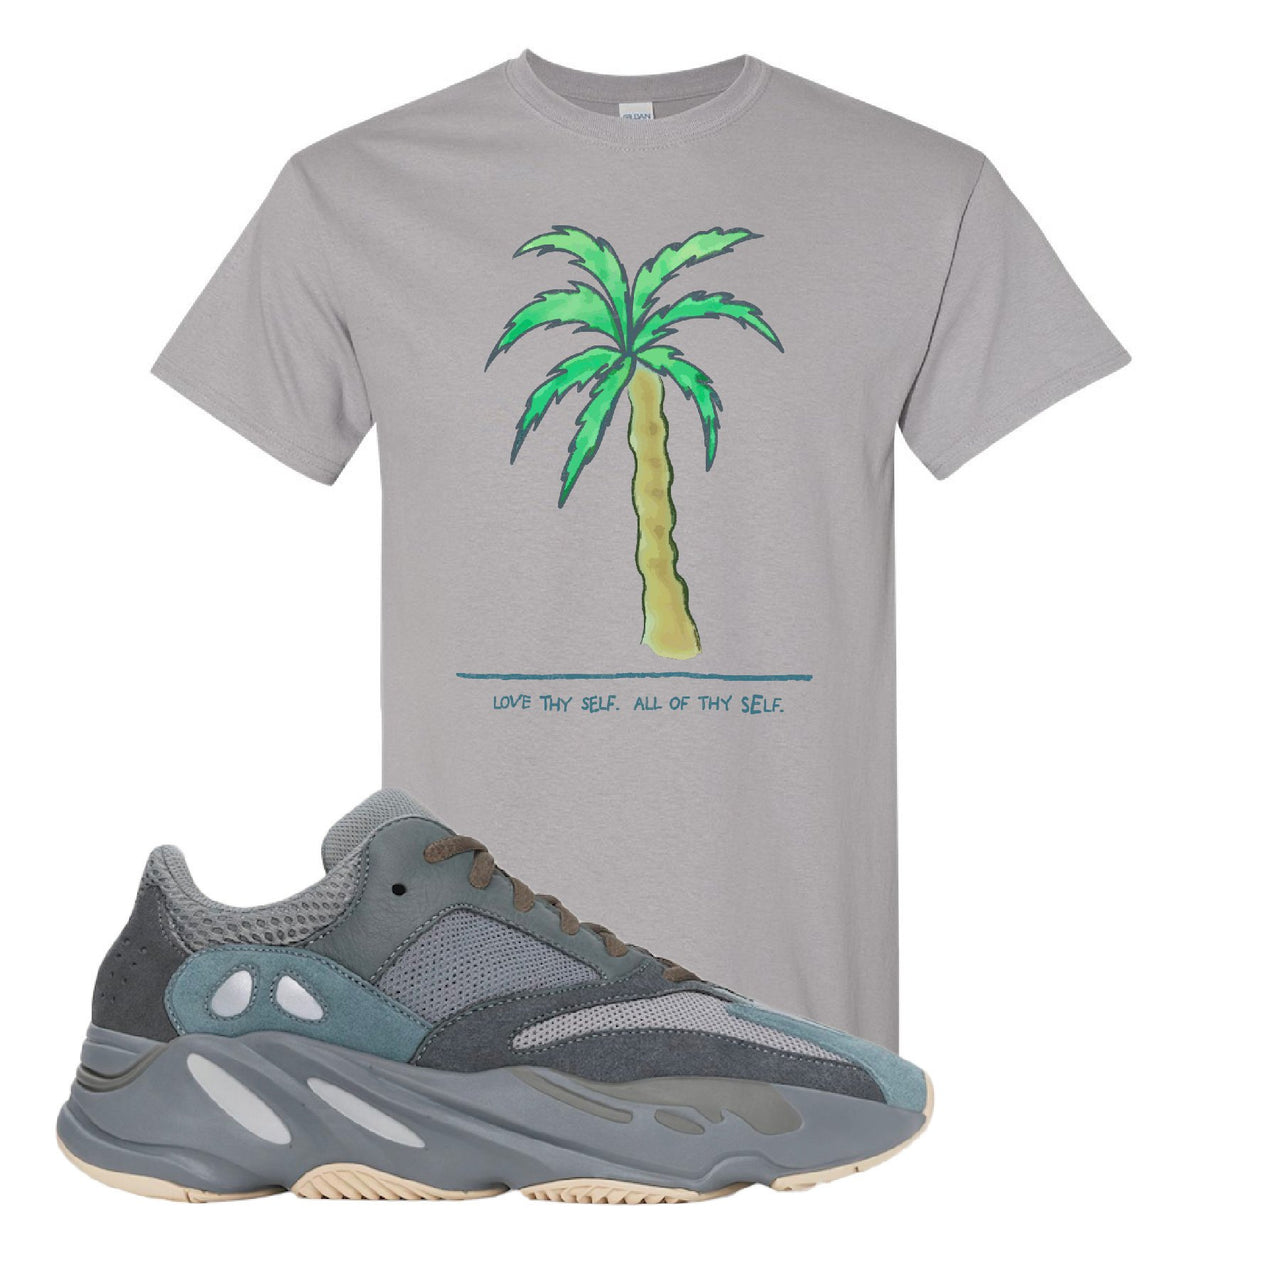 Yeezy Boost 700 Teal Blue Love Thyself Palm Gravel Sneaker Hook Up T-Shirt